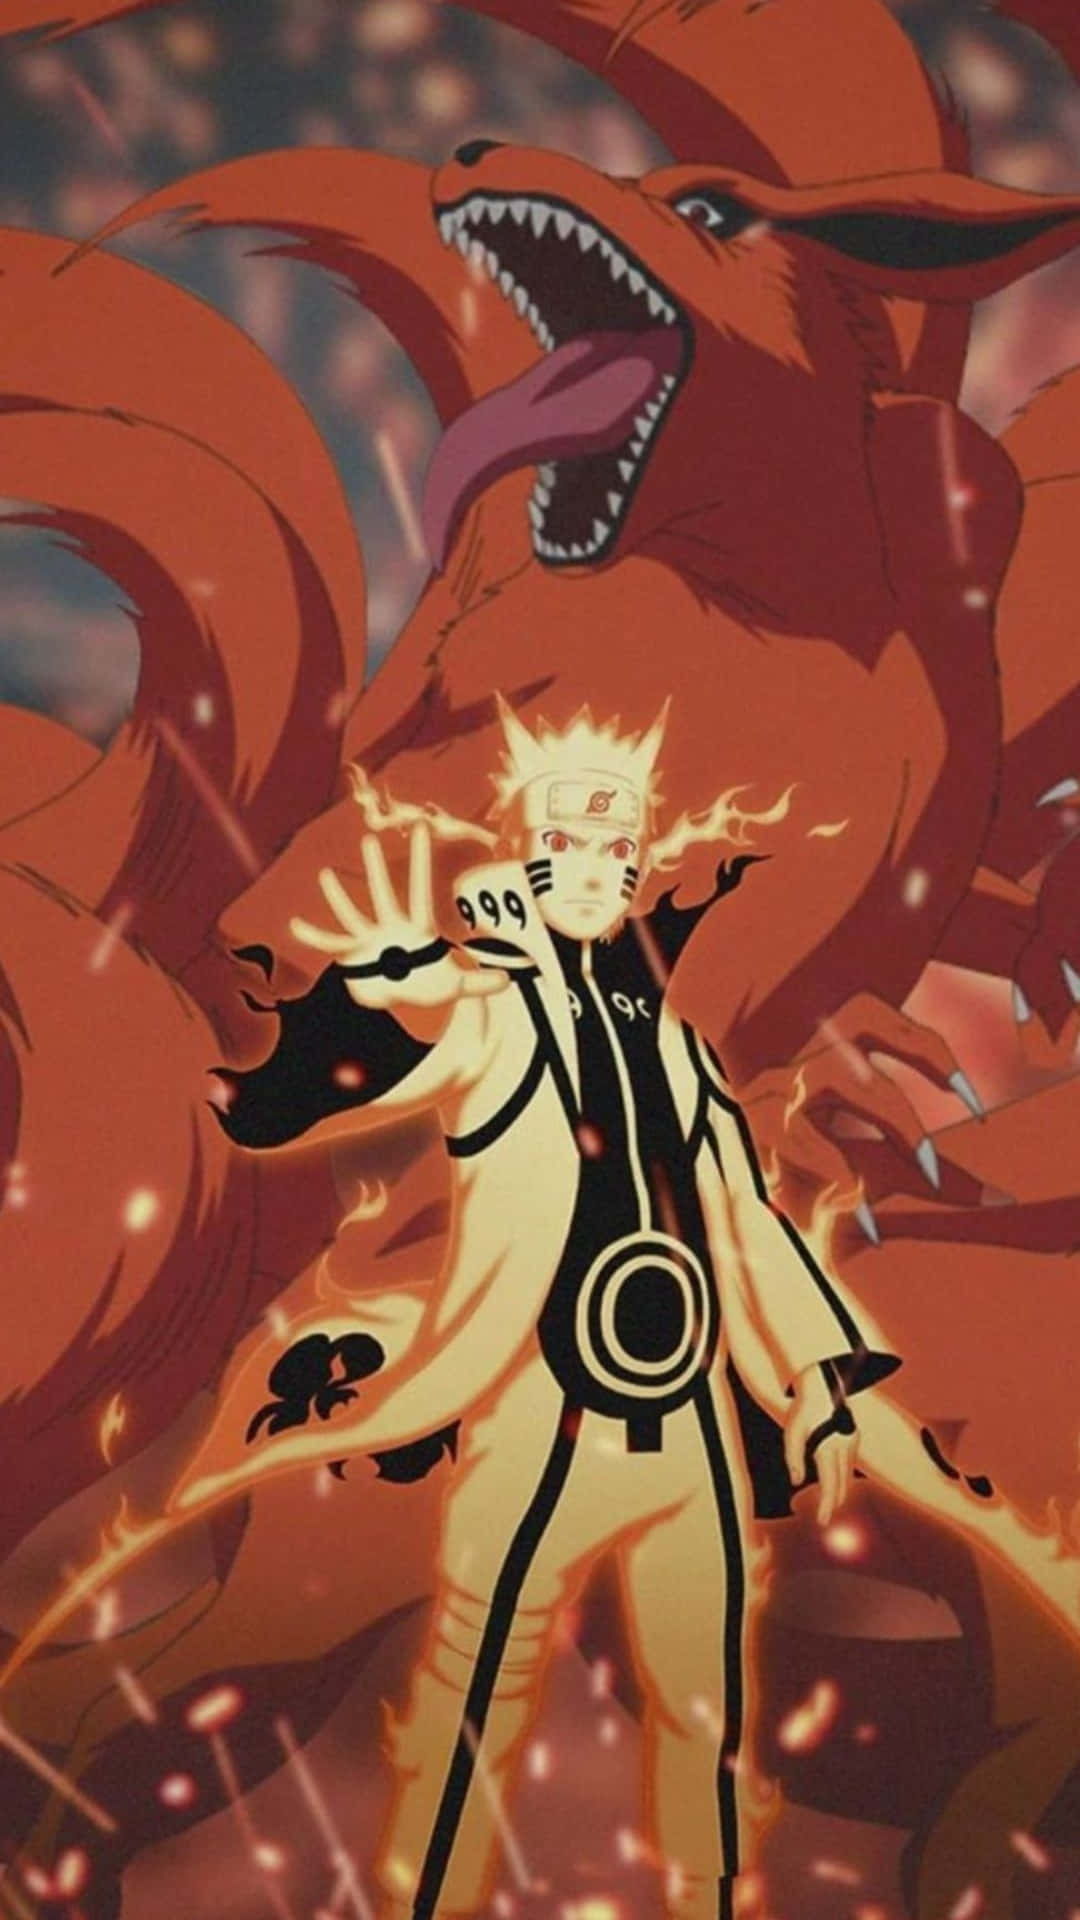 Fondode Pantalla Genial De Naruto En El Modo De Chakra De La Bestia De Las Colas Con Kurama. Fondo de pantalla